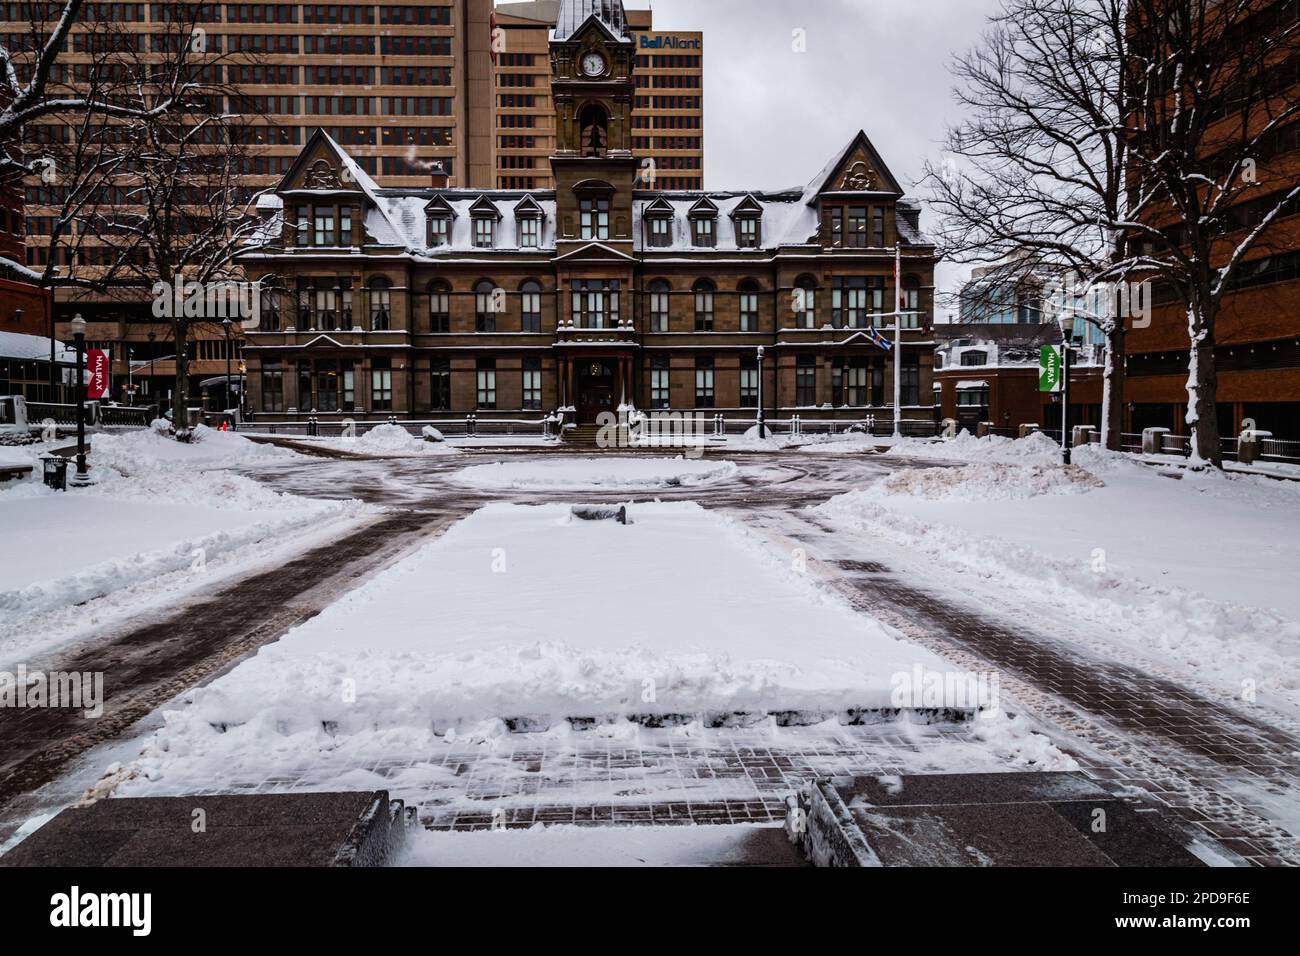 Lieu historique national du Canada de l'Hôtel de ville de Halifax Banque D'Images